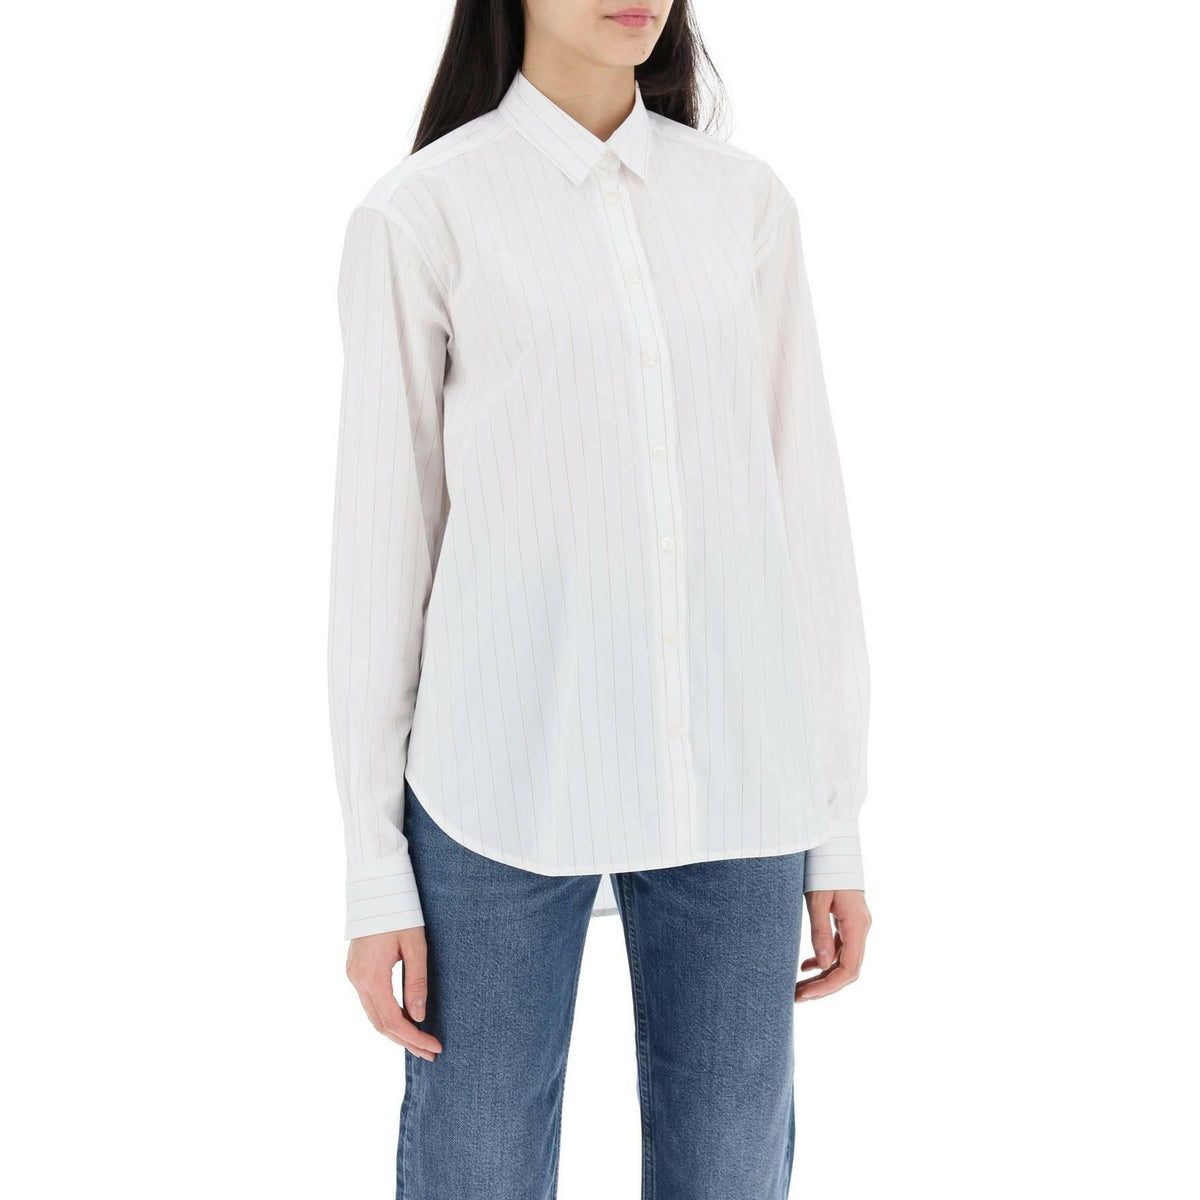 TOTEME - White Organic Cotton Striped Signature Shirt - JOHN JULIA